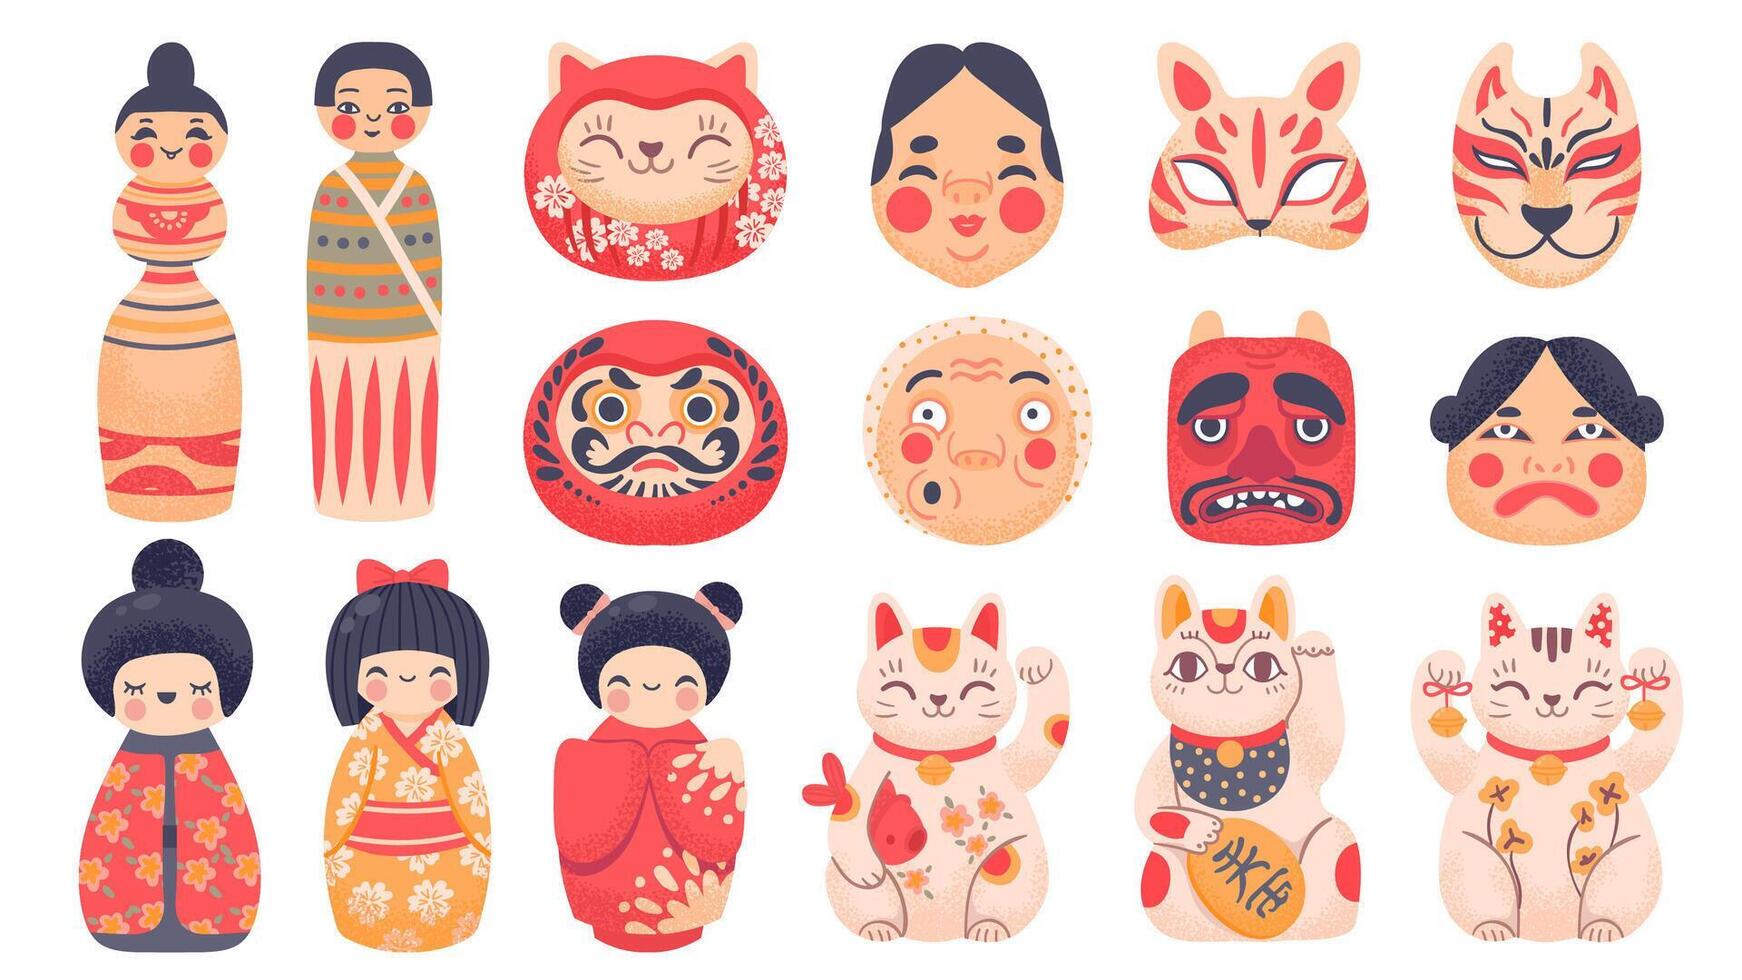 giapponese tradizionale giocattoli. daruma, kokeshi bambole, maneki neko fortunato gatto e maschera a partire dal Giappone. carino cartone animato asiatico cultura simboli vettore impostato